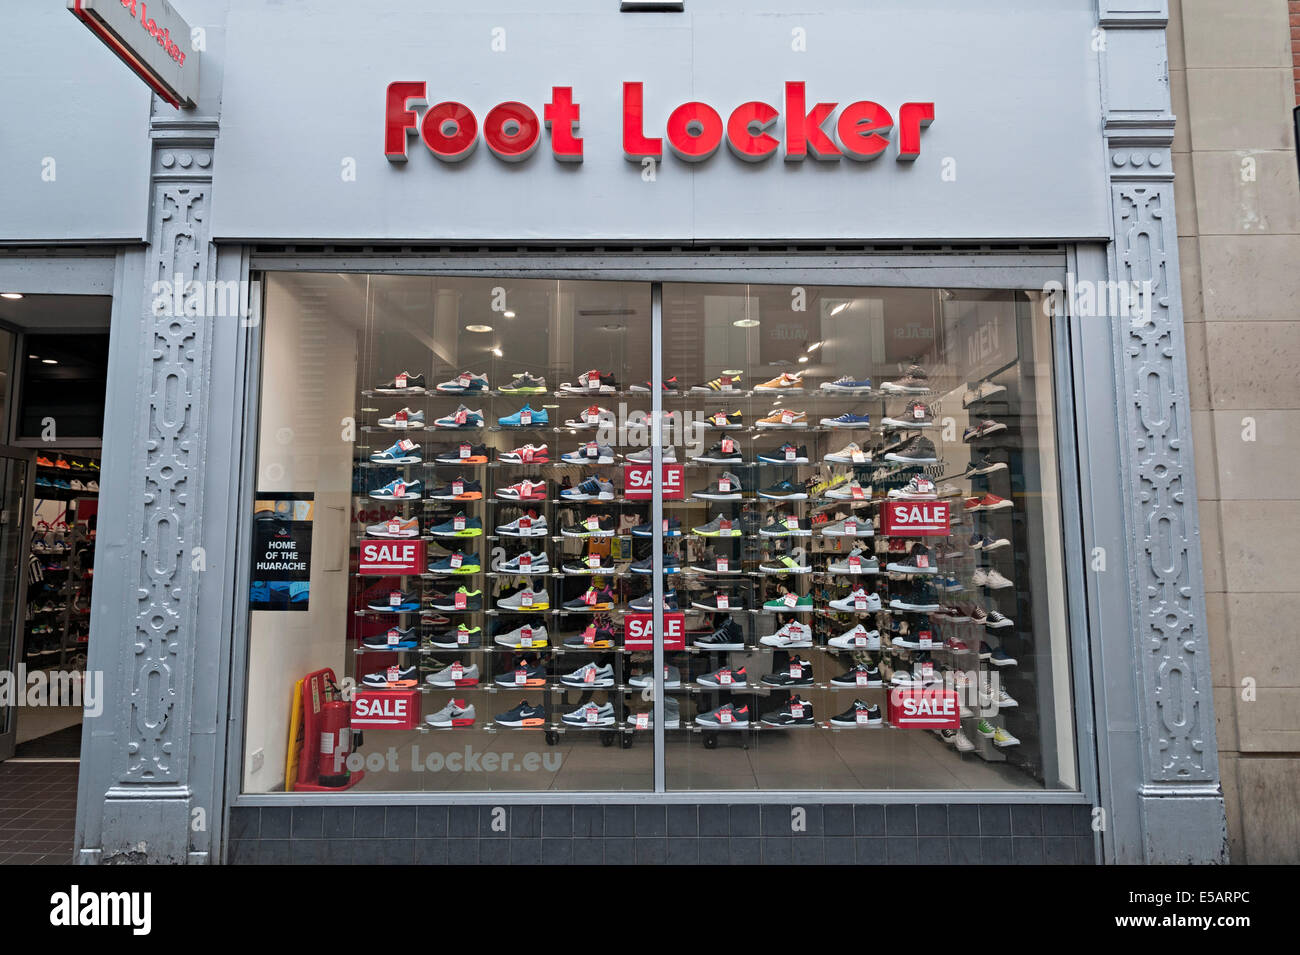 Per Foot Locker Foot Locker calzatura negozio vendita finestra di segno e display trainer Nottingham Foto Stock